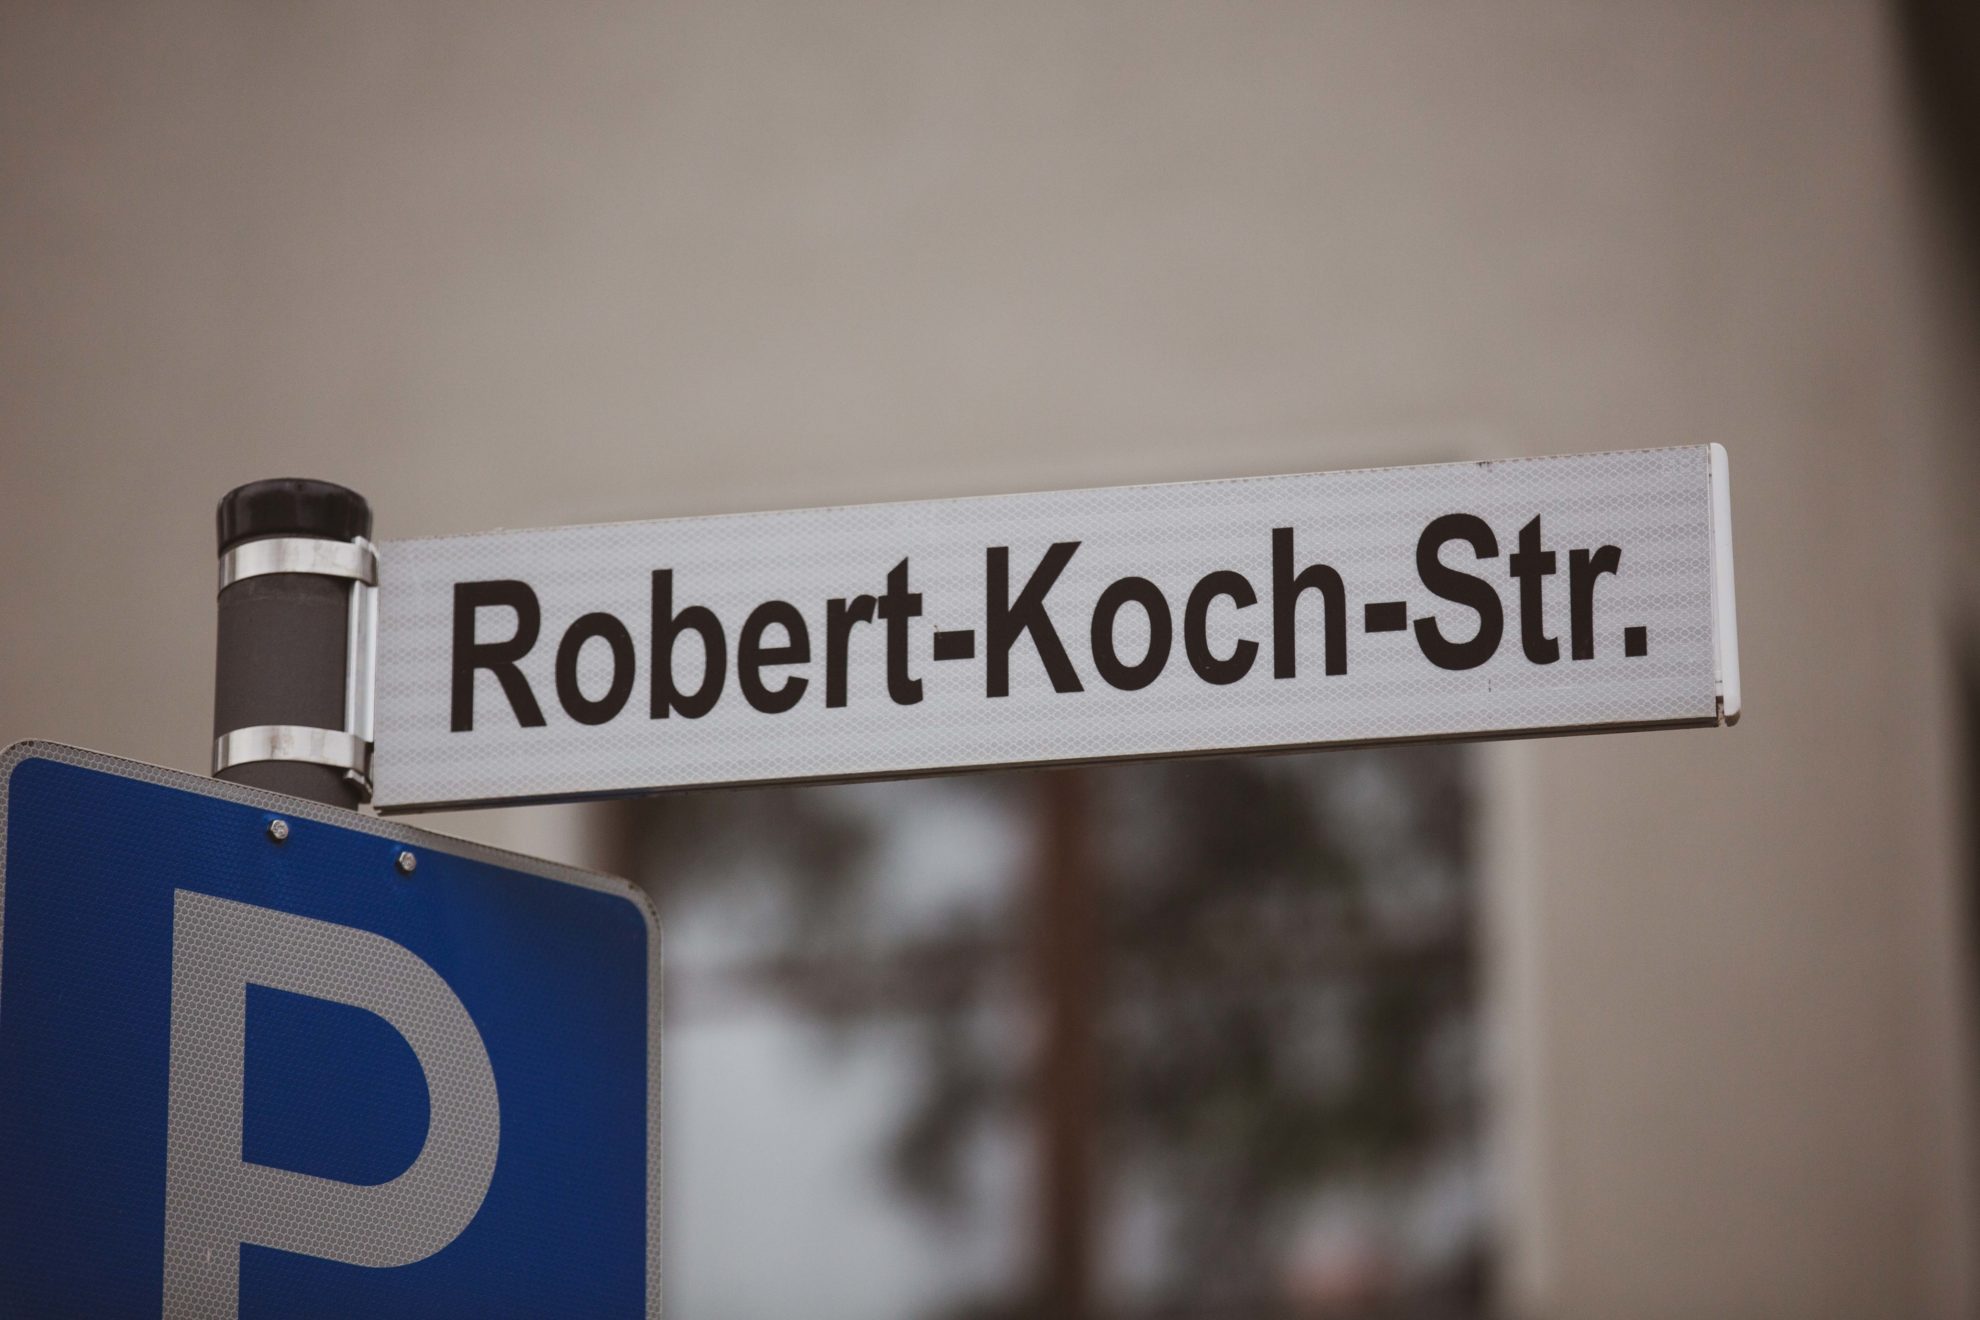 Robert-Koch-Str.